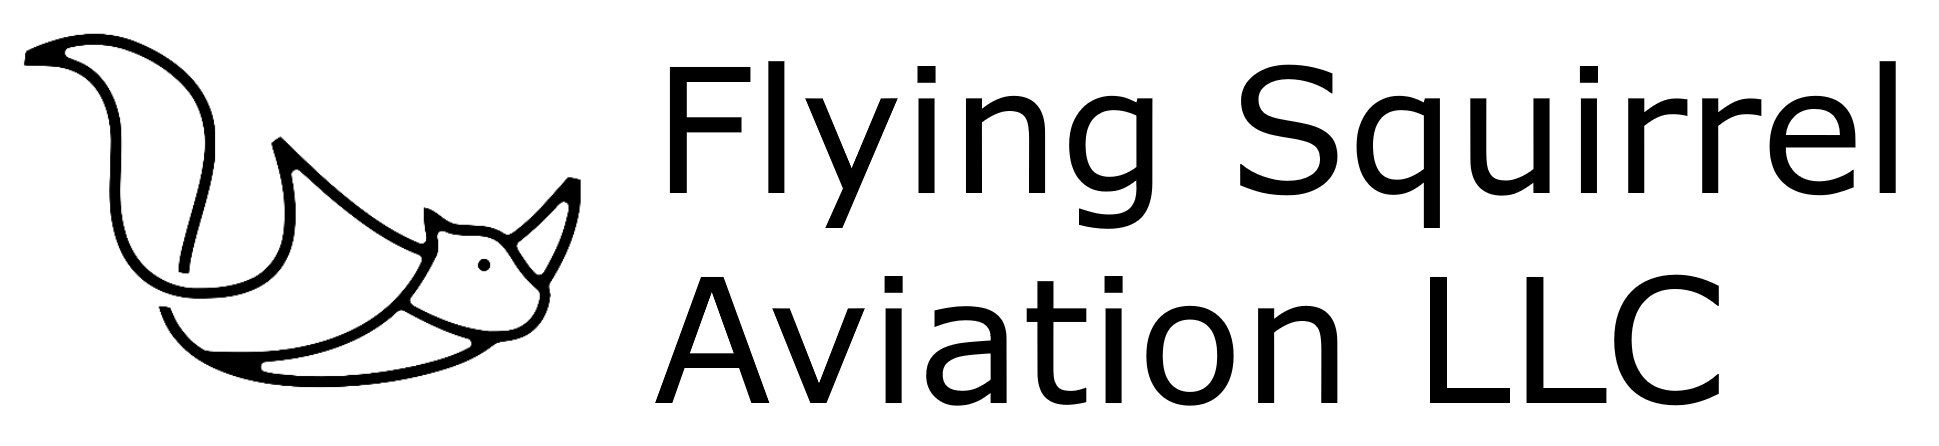 FlyingSquirrelAviationLLC.com